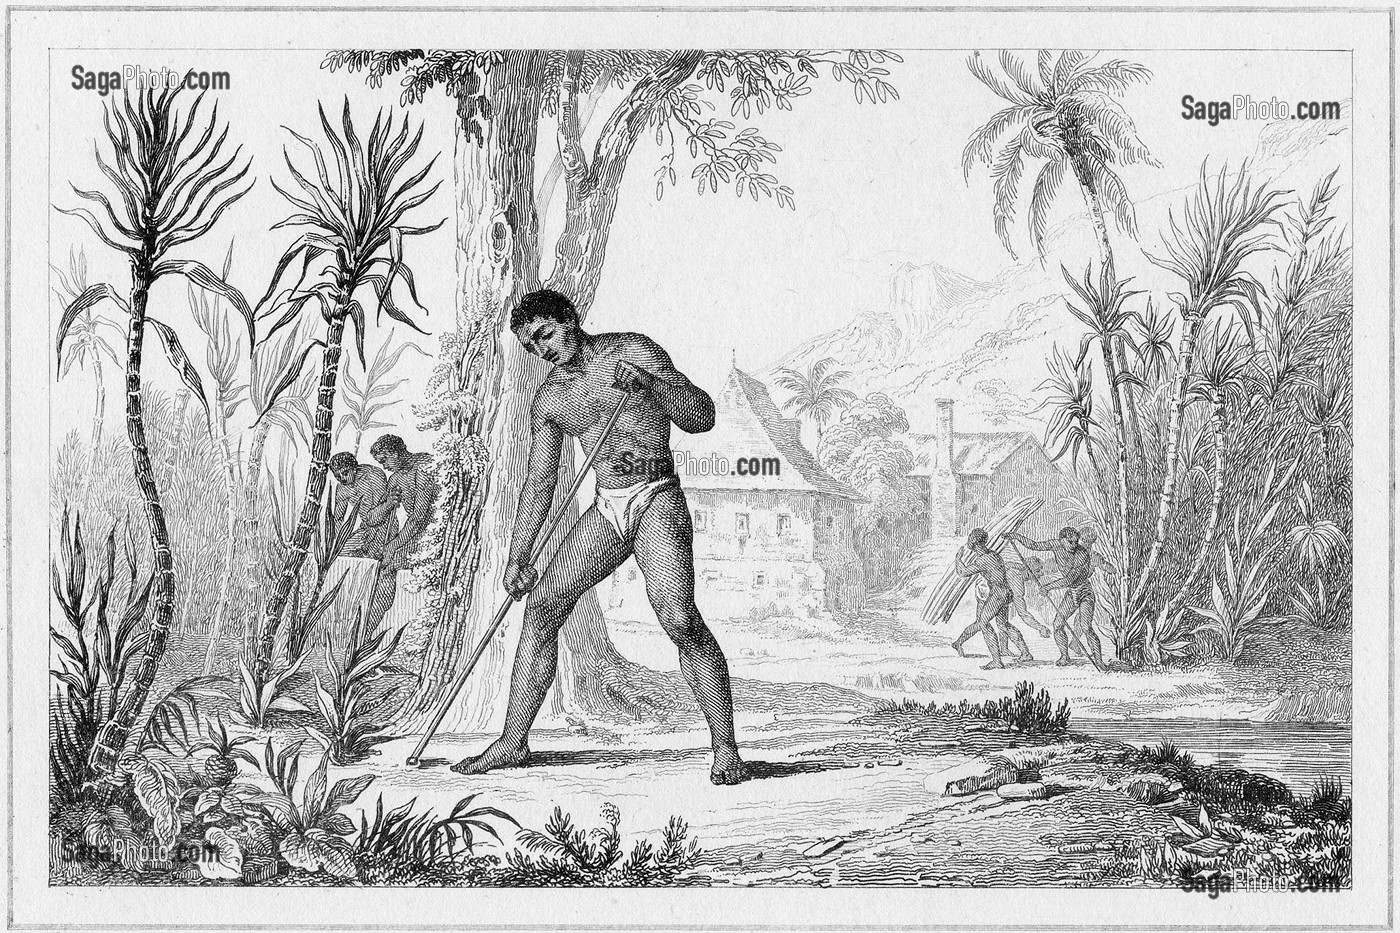 INDIGENES CULTIVANT LA CANNE A SUCRE A TAHITI GRAVEE PAR CHOLLET D'APRES DANVIN, 1836, MENTION OBLIGATOIRE : COLLECTION SAINT-JAMES 